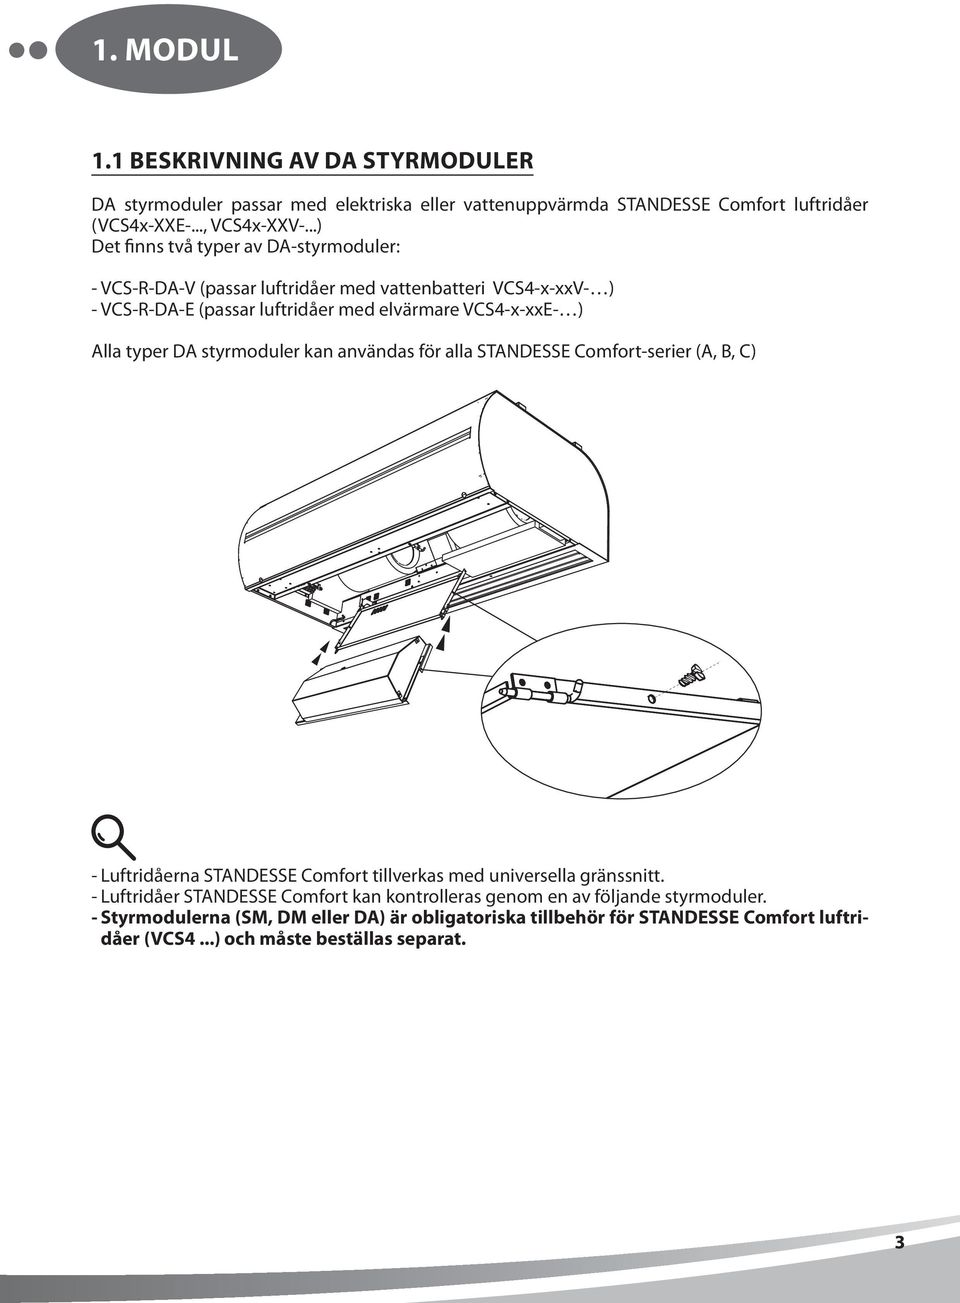 typer DA styrmoduler kan användas för alla STANDESSE Comfort-serier (A, B, C) - Luftridåerna STANDESSE Comfort tillverkas med universella gränssnitt.